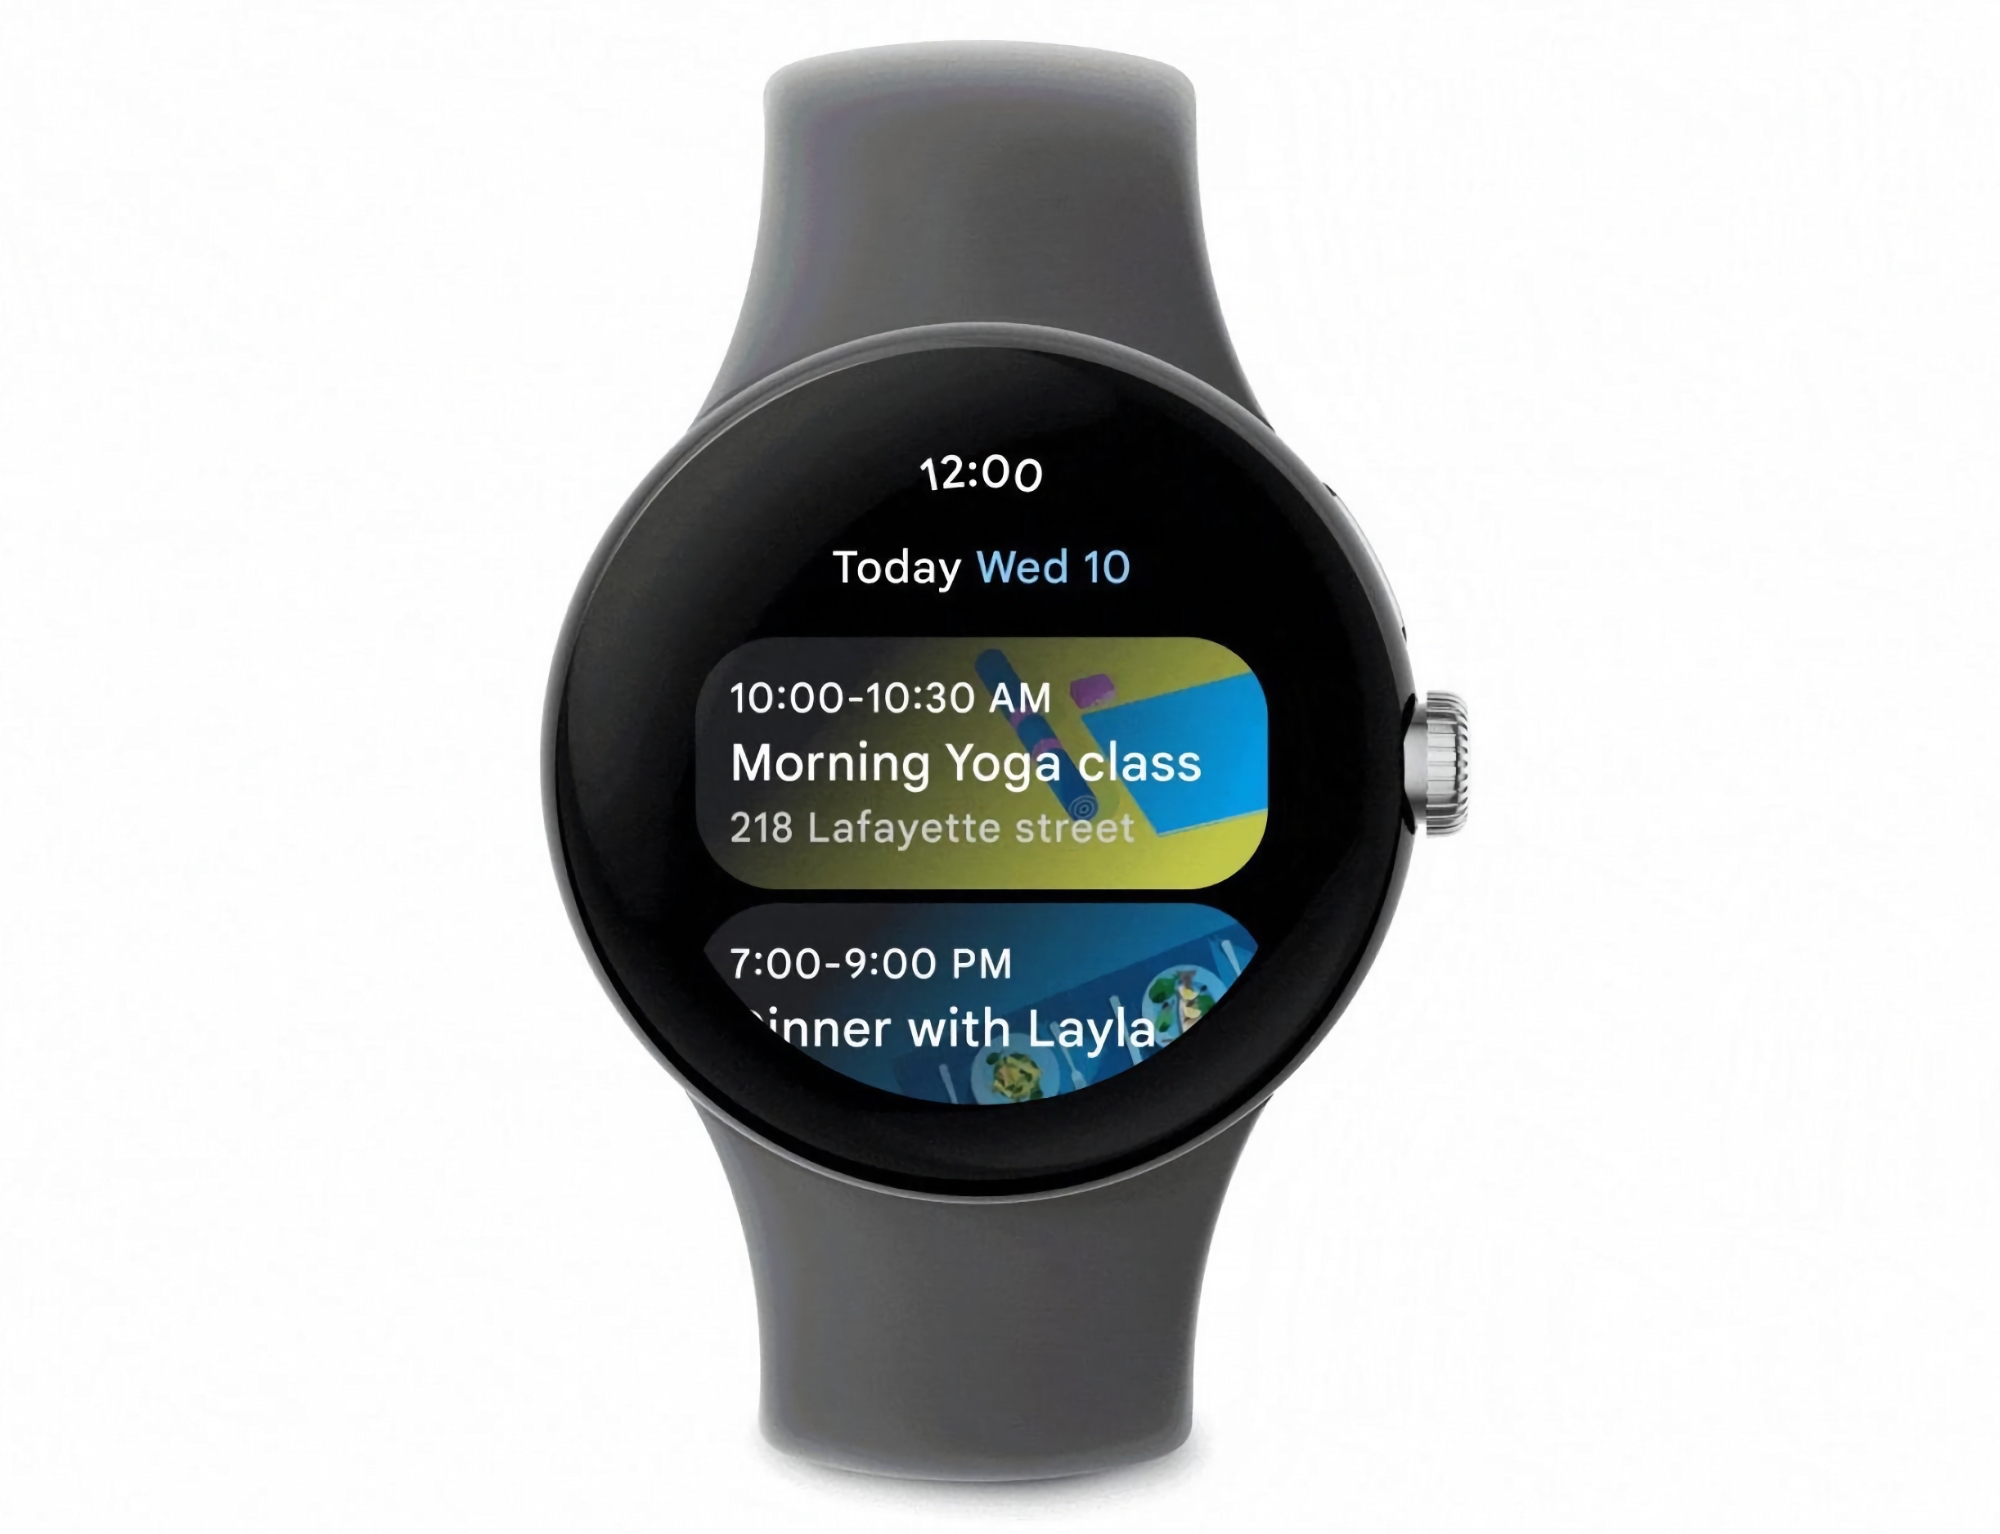 Wear OS smartwatch users got the Google Calendar app